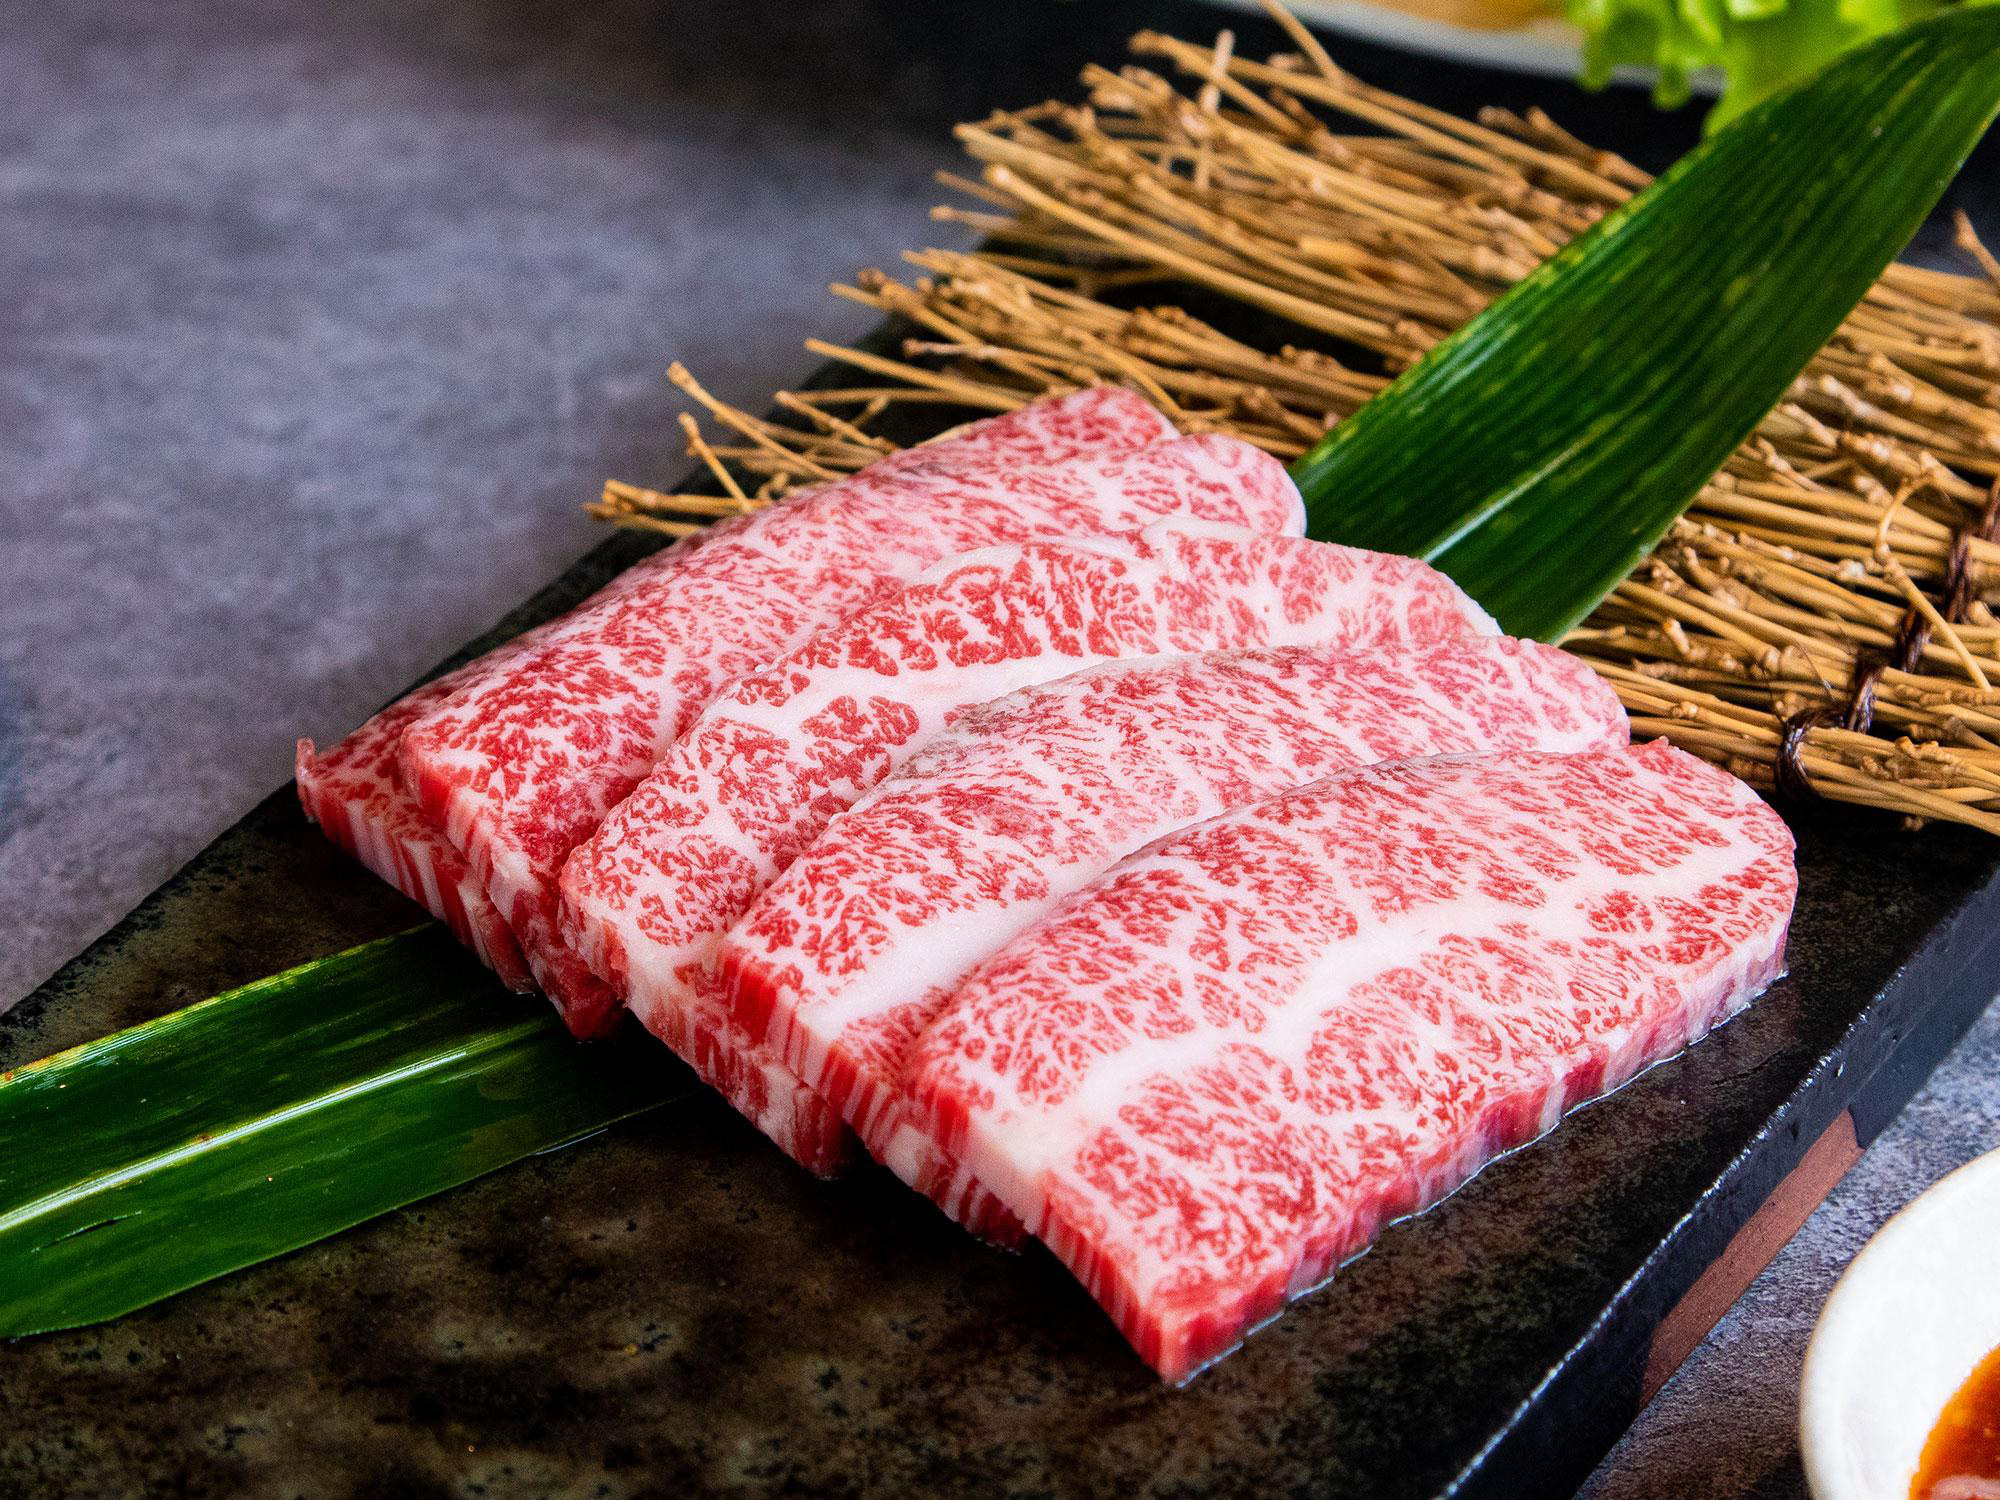 Siêu phẩm thịt đỏ đến từ Nhật Bản - Bò Wagyu Sendai - Ảnh 3.